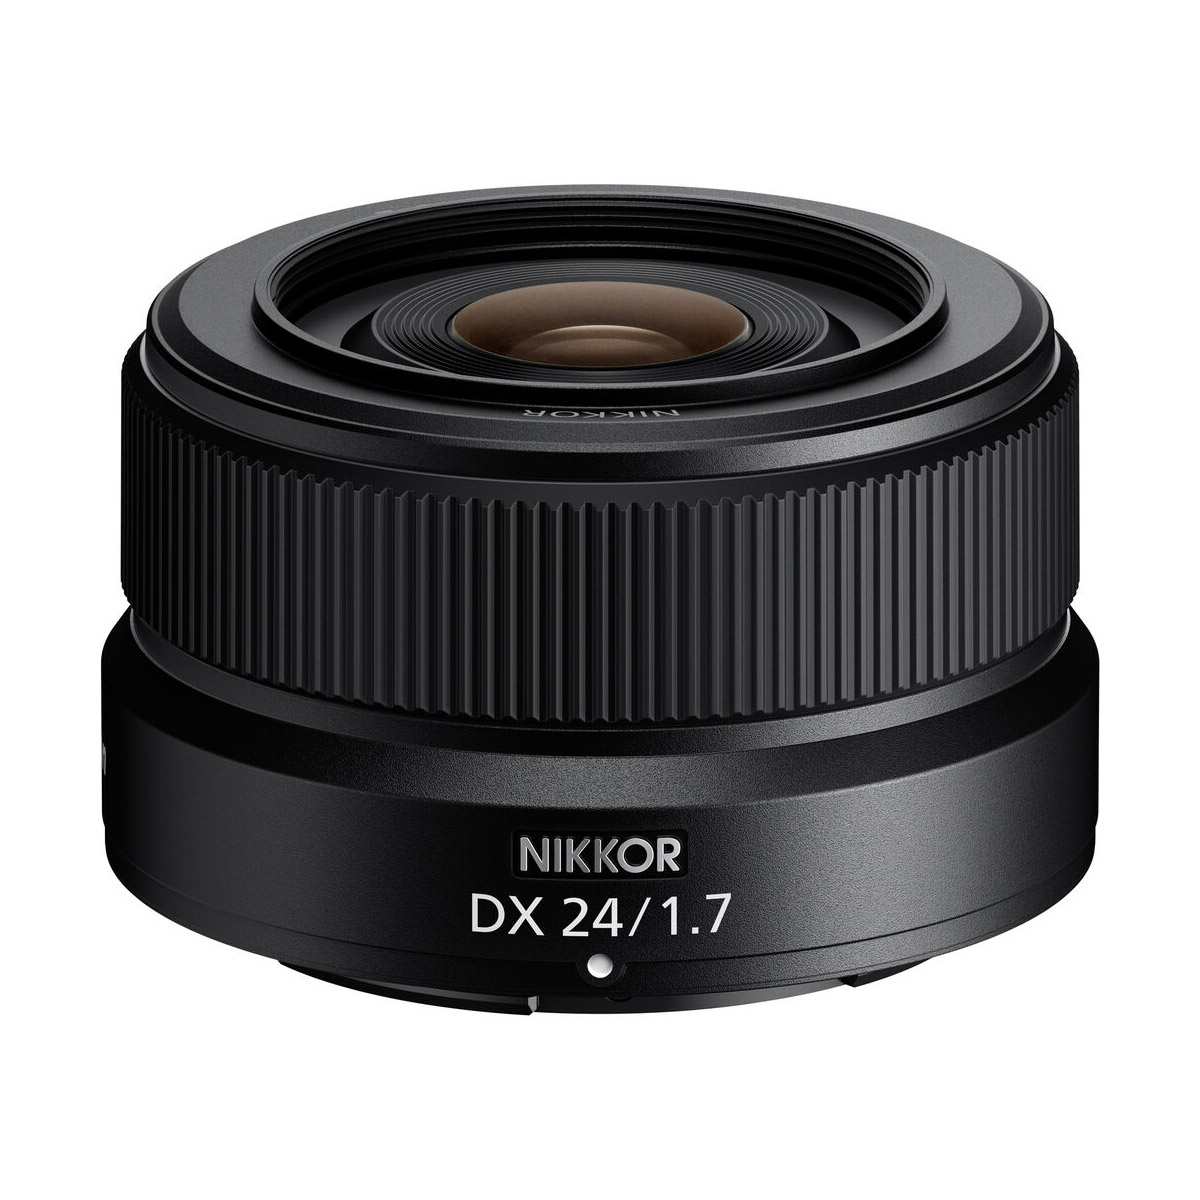 Nikkor Z DX 24mm f/1.7 product image